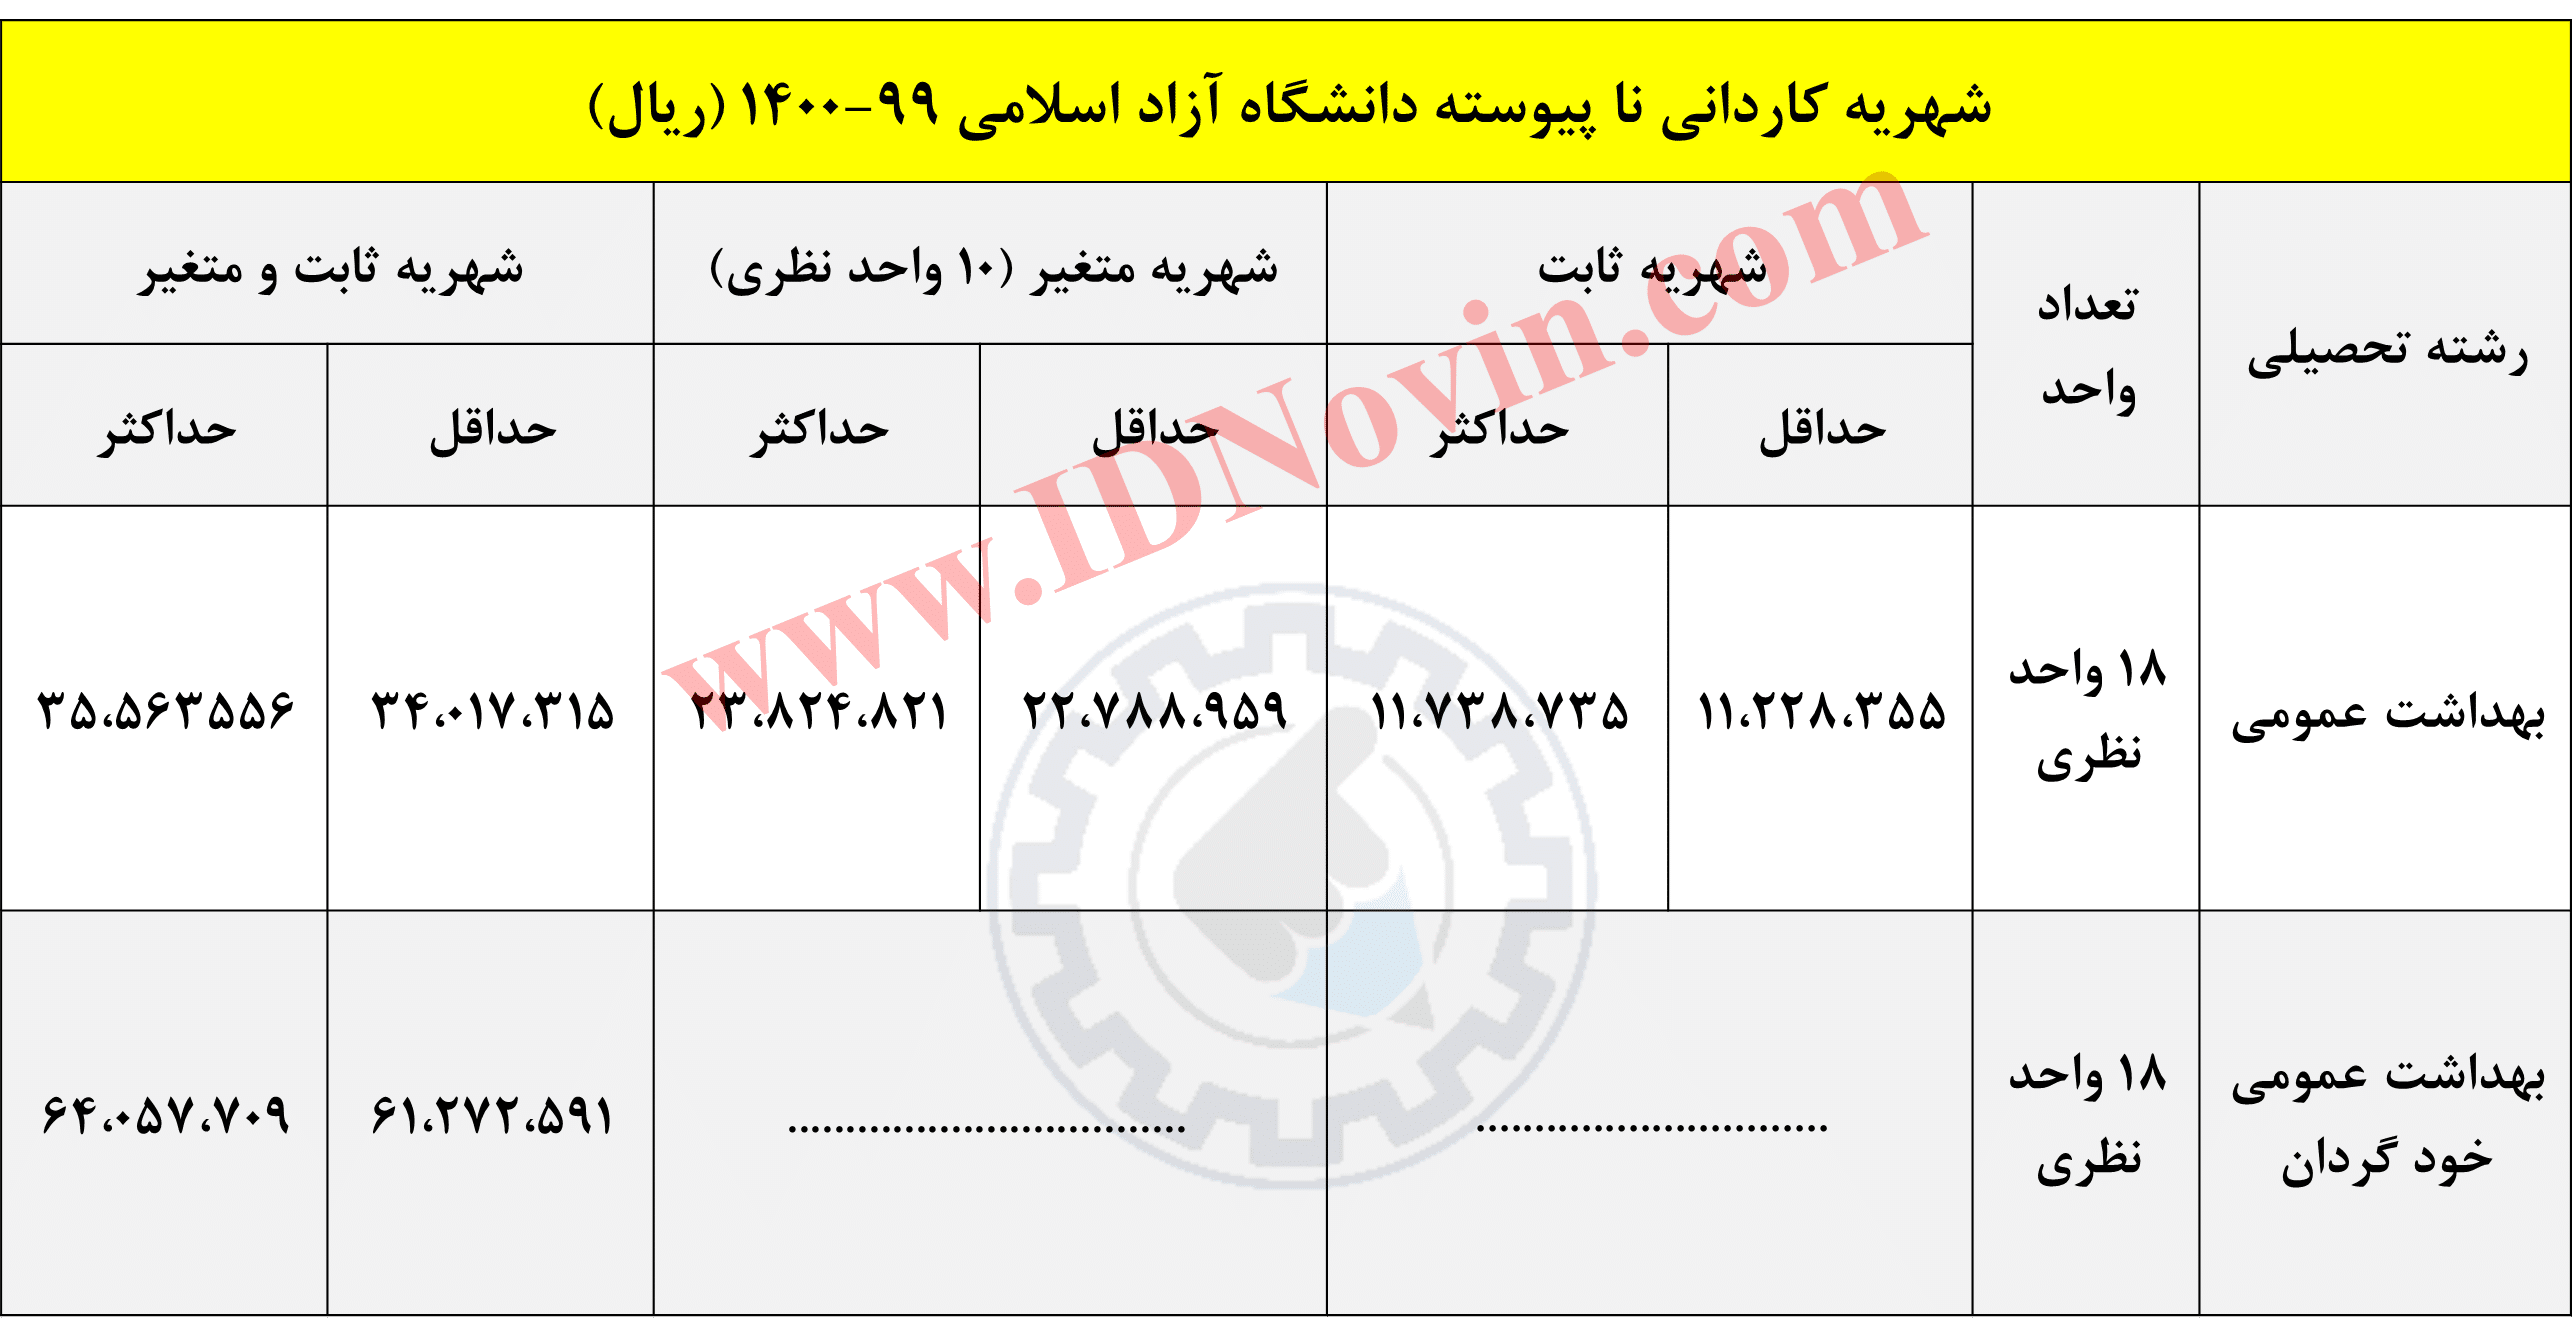 شهریه کاردانی نا پیوسته دانشگاه آزاد اسلامی 99-1400 (ریال)